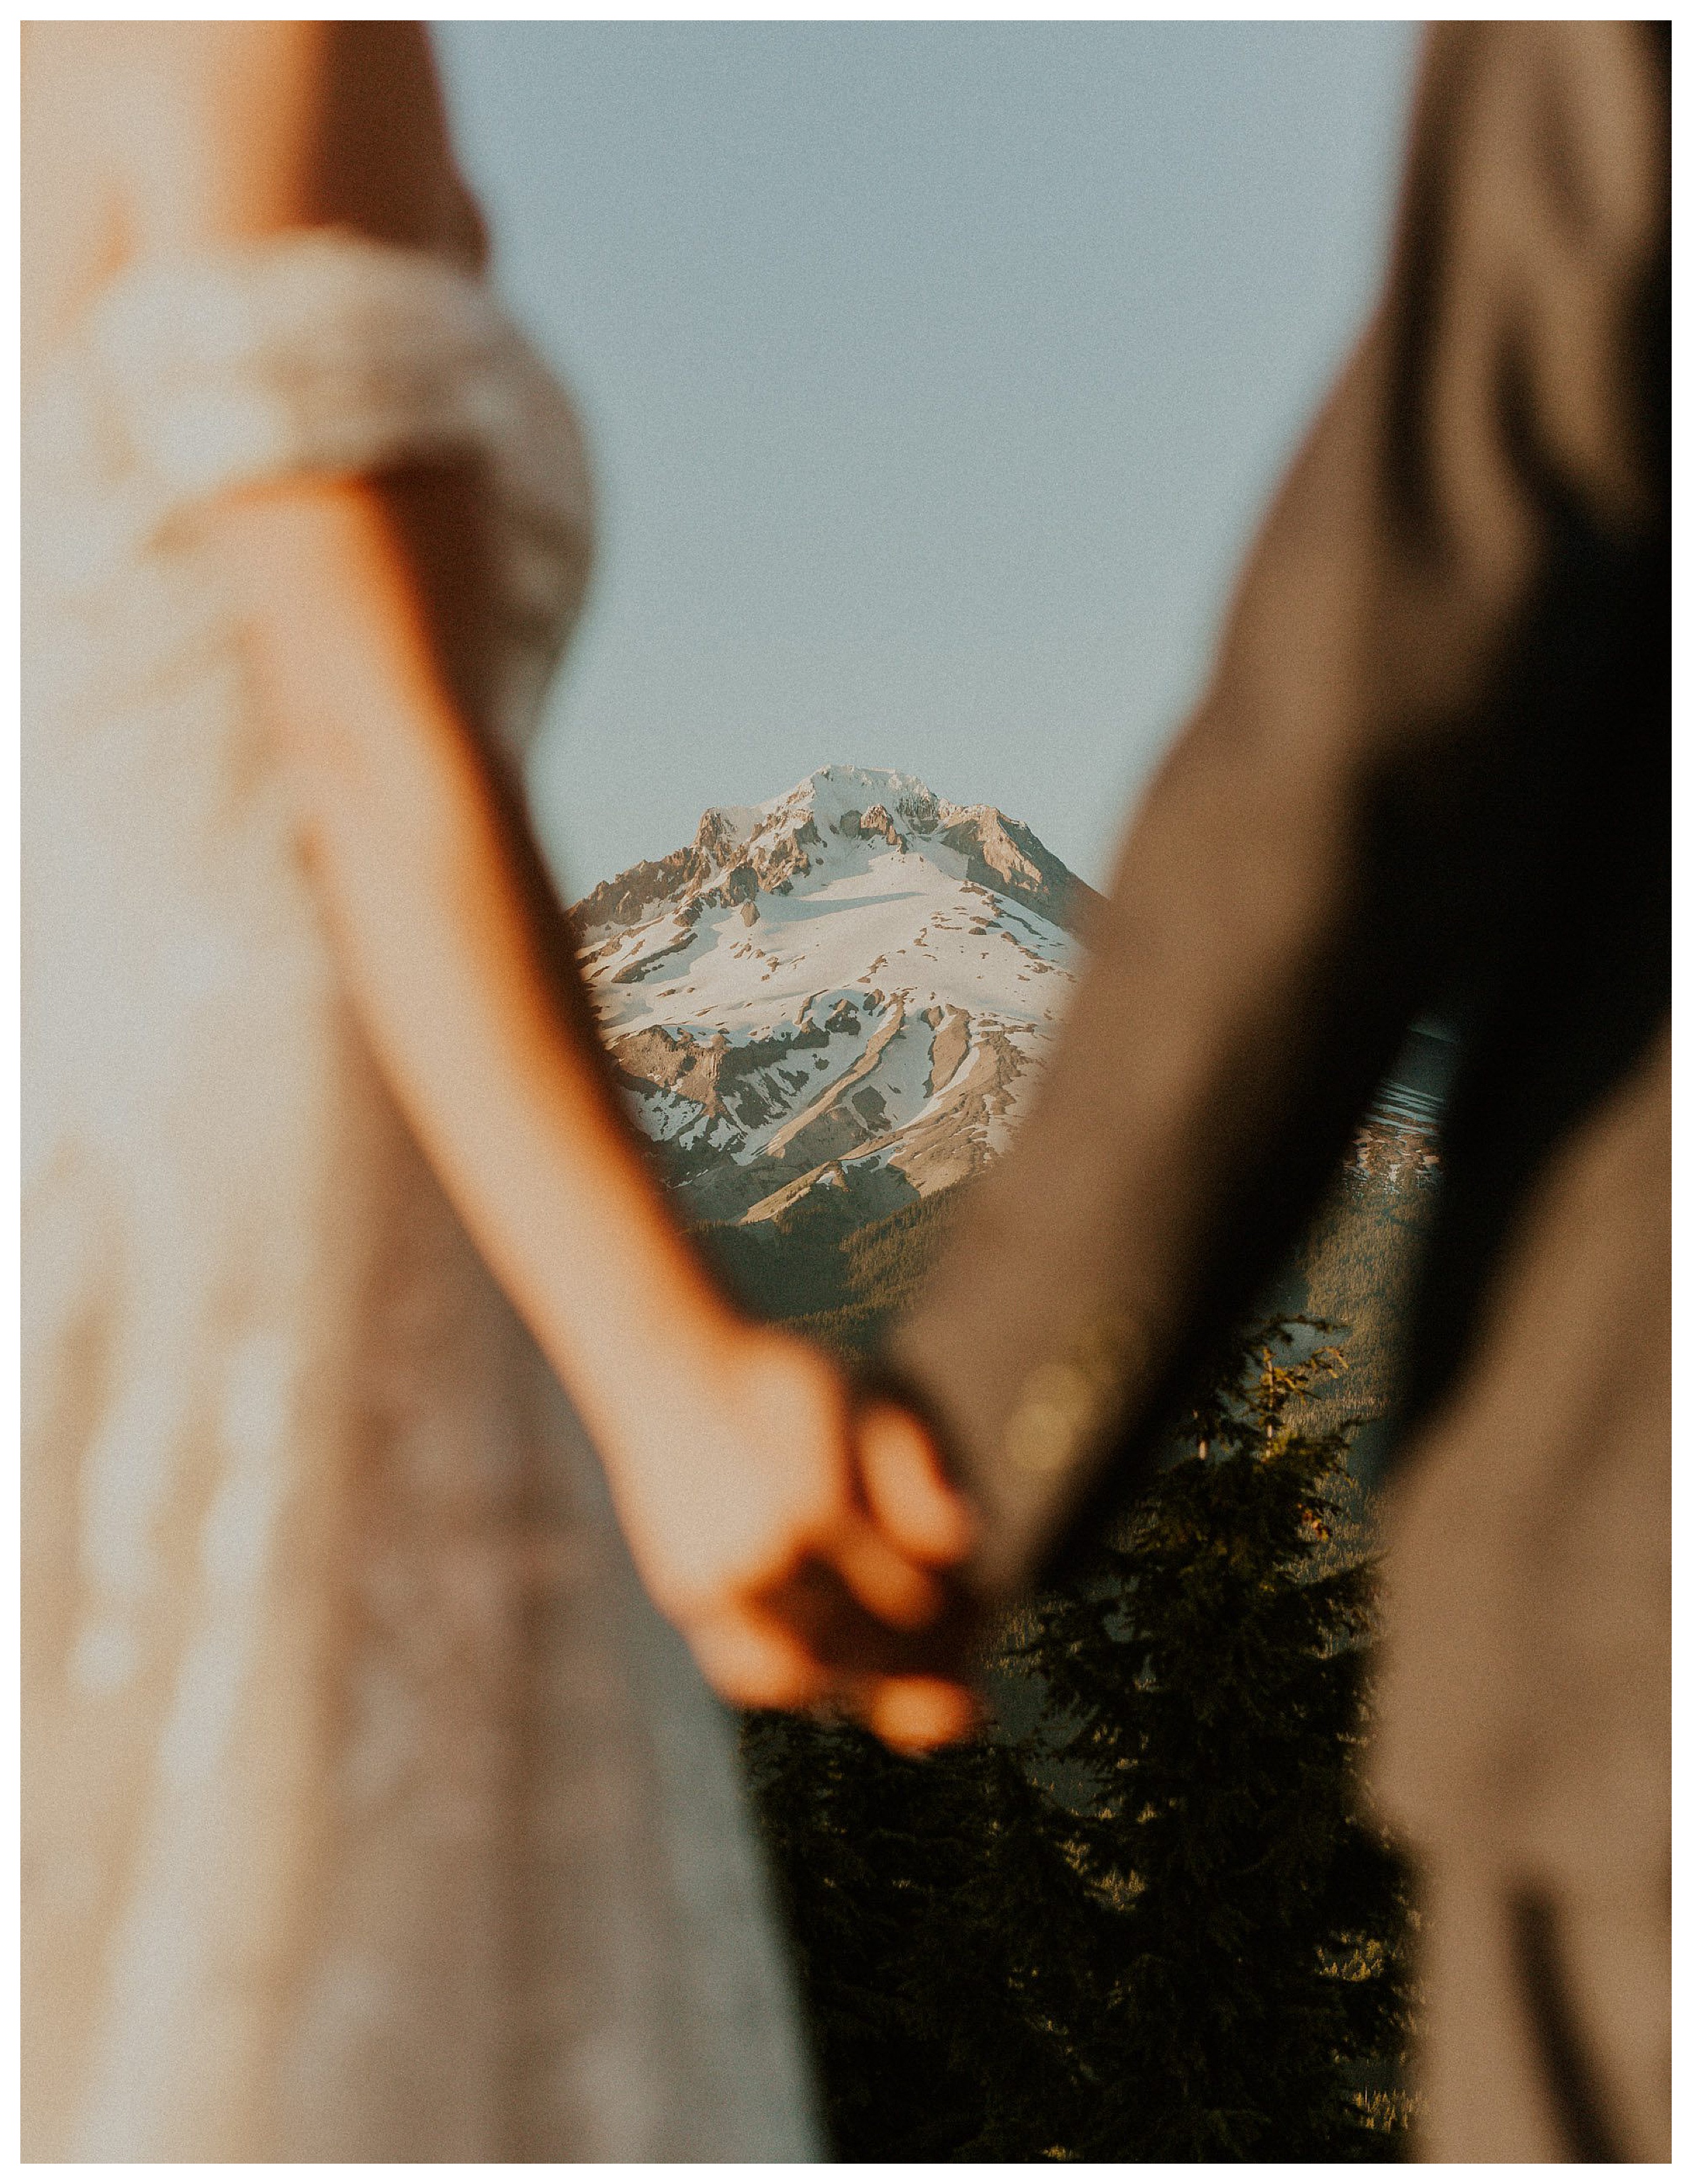 bride and groom holding hands mount hood landscape

